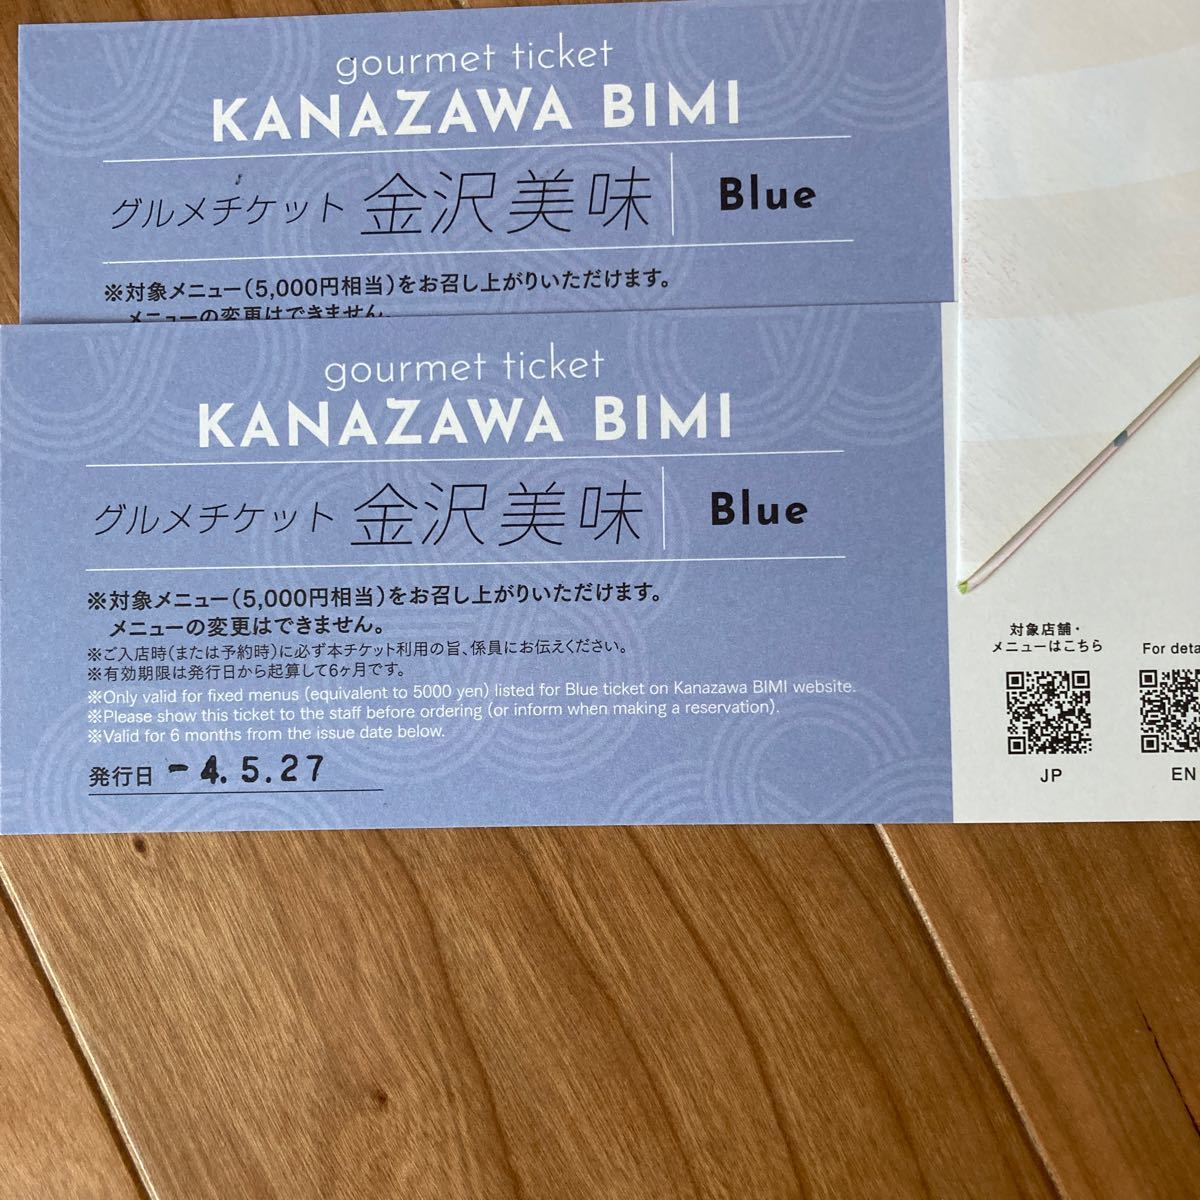 金沢美味 Blue グルメチケット - www.coopersalehousenc.com